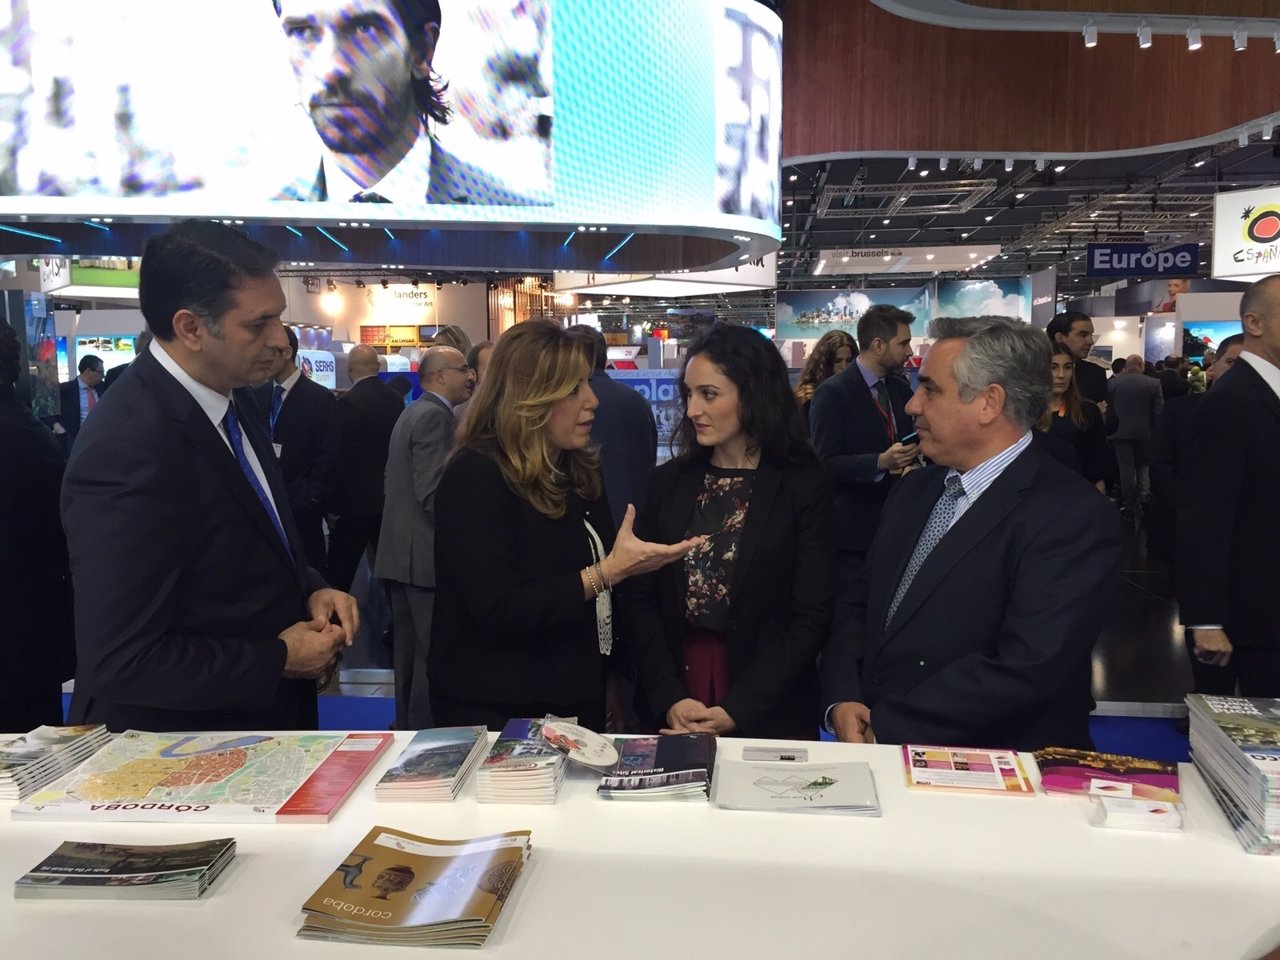 Gómez junto a la presidenta de la Junta de Andalucía (centro) en la WTM Londres